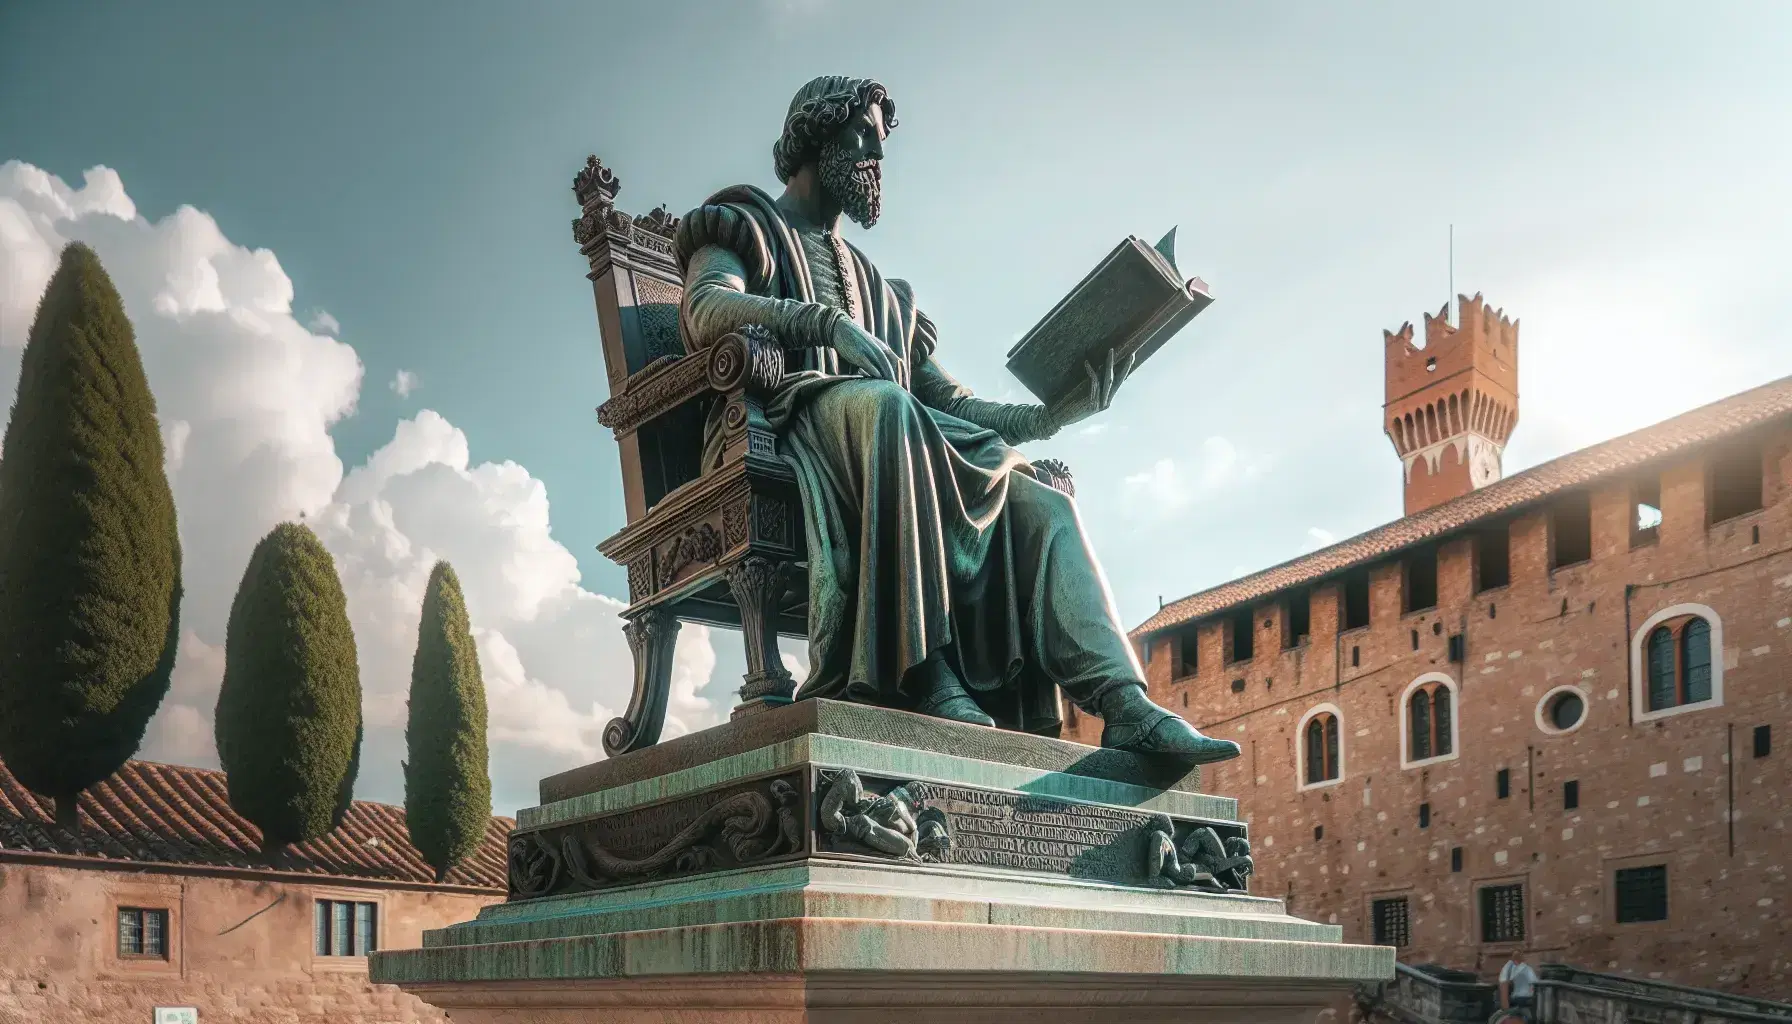 Estatua de bronce de hombre barbudo del siglo XVI sentado con libro abierto y papel, sobre pedestal de piedra, con cielo azul y edificio antiguo al fondo.